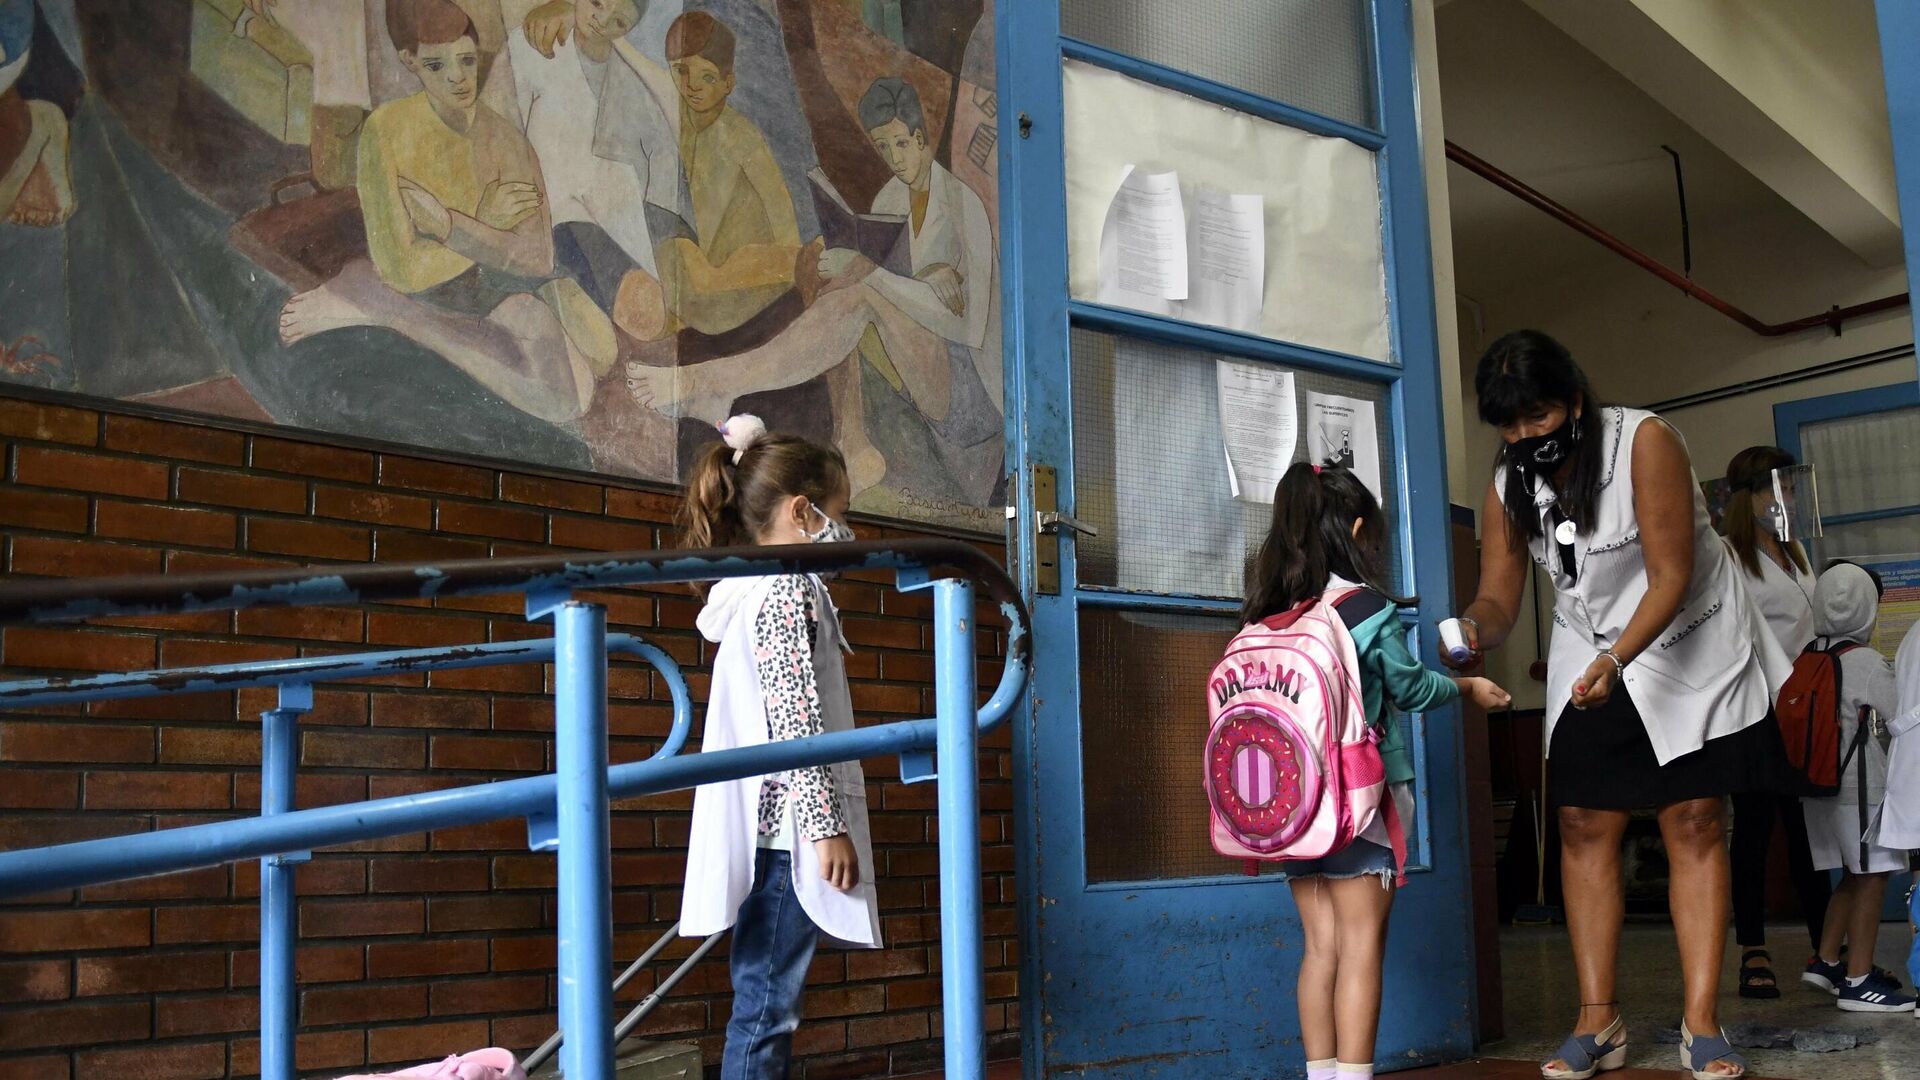 Los alumnos en la escuela en Argentina (imagen referencial)  - Sputnik Mundo, 1920, 30.11.2021